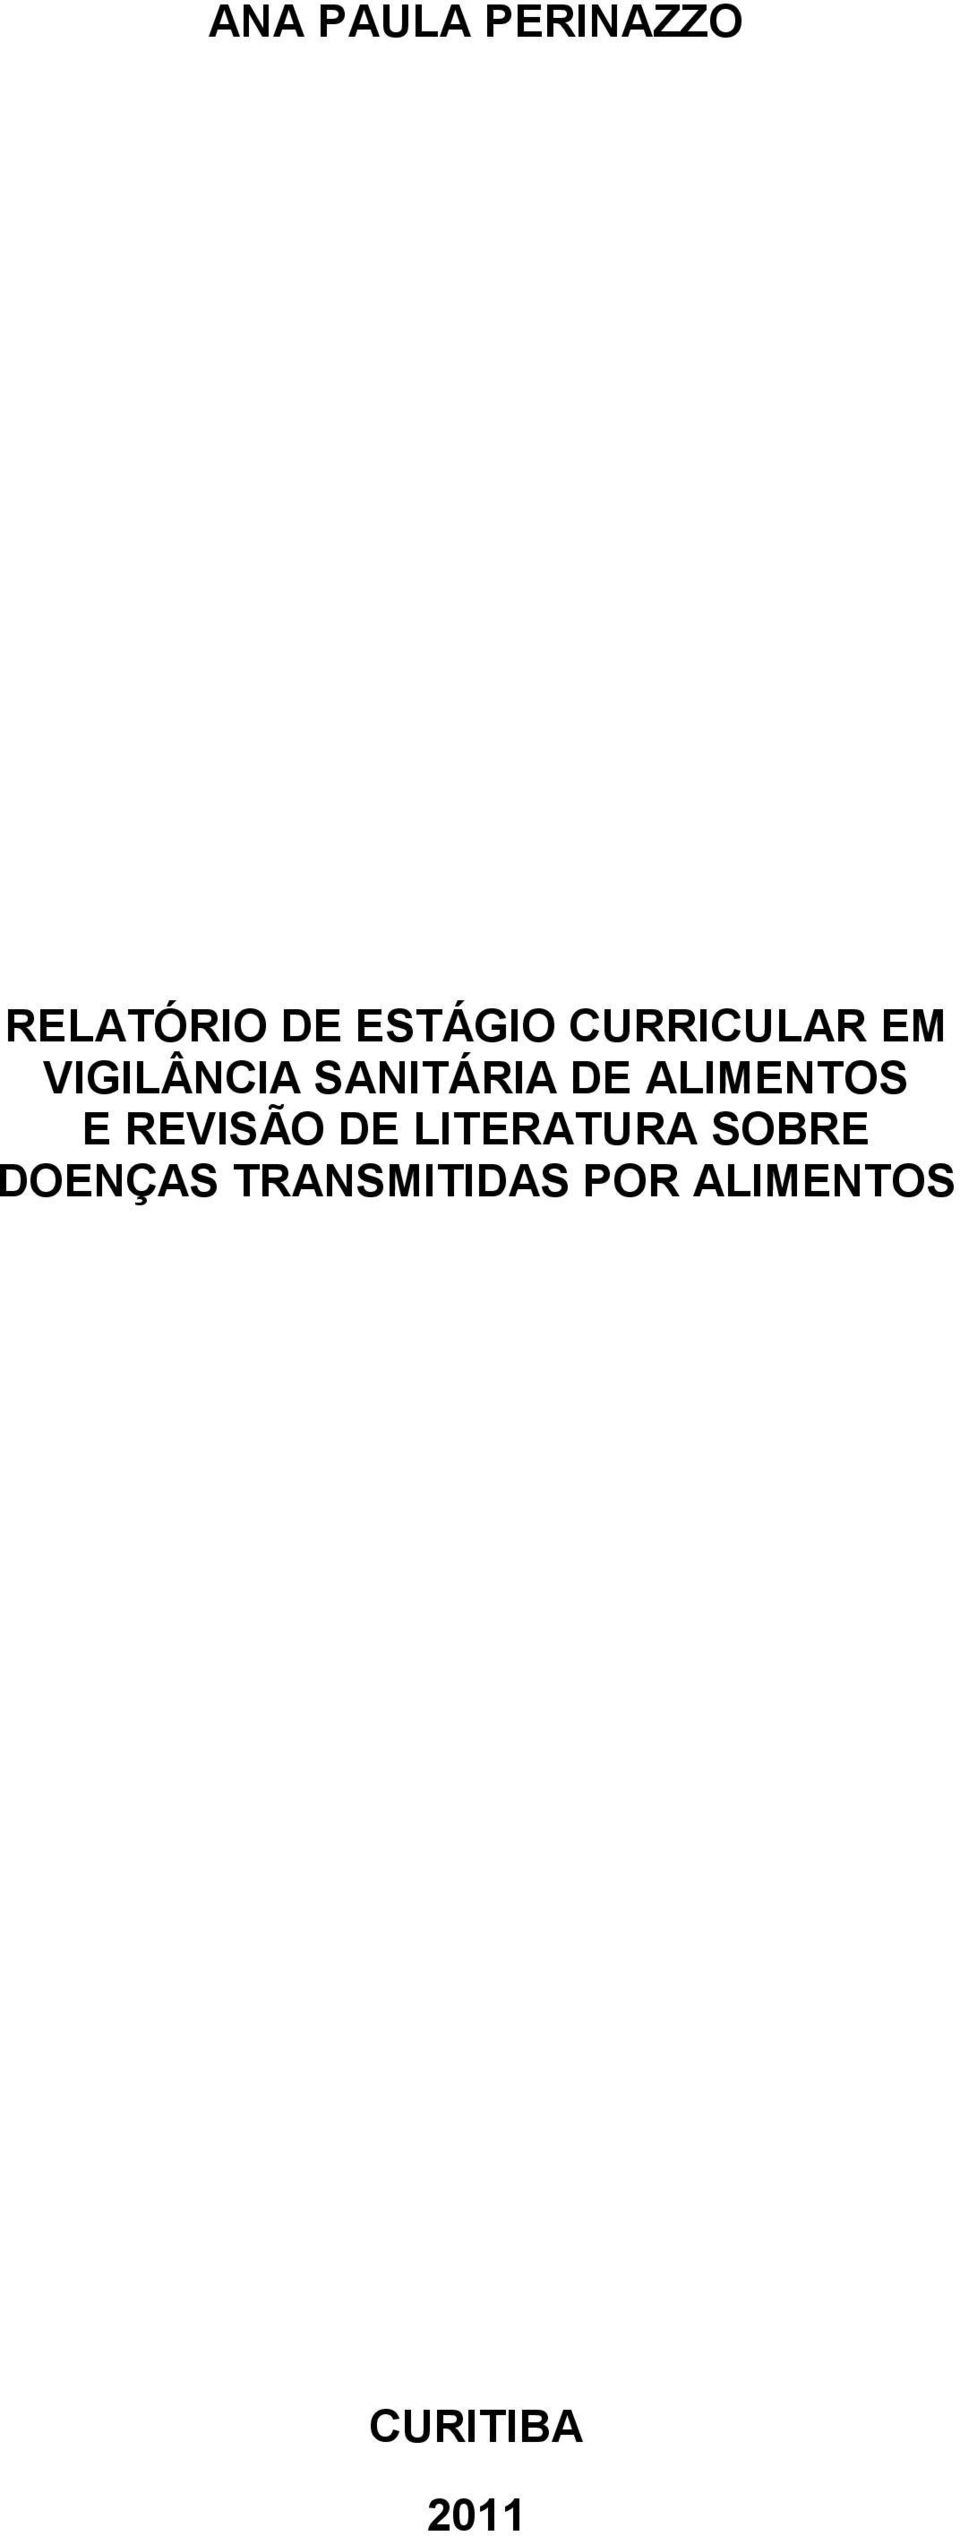 ALIMENTOS E REVISÃO DE LITERATURA SOBRE